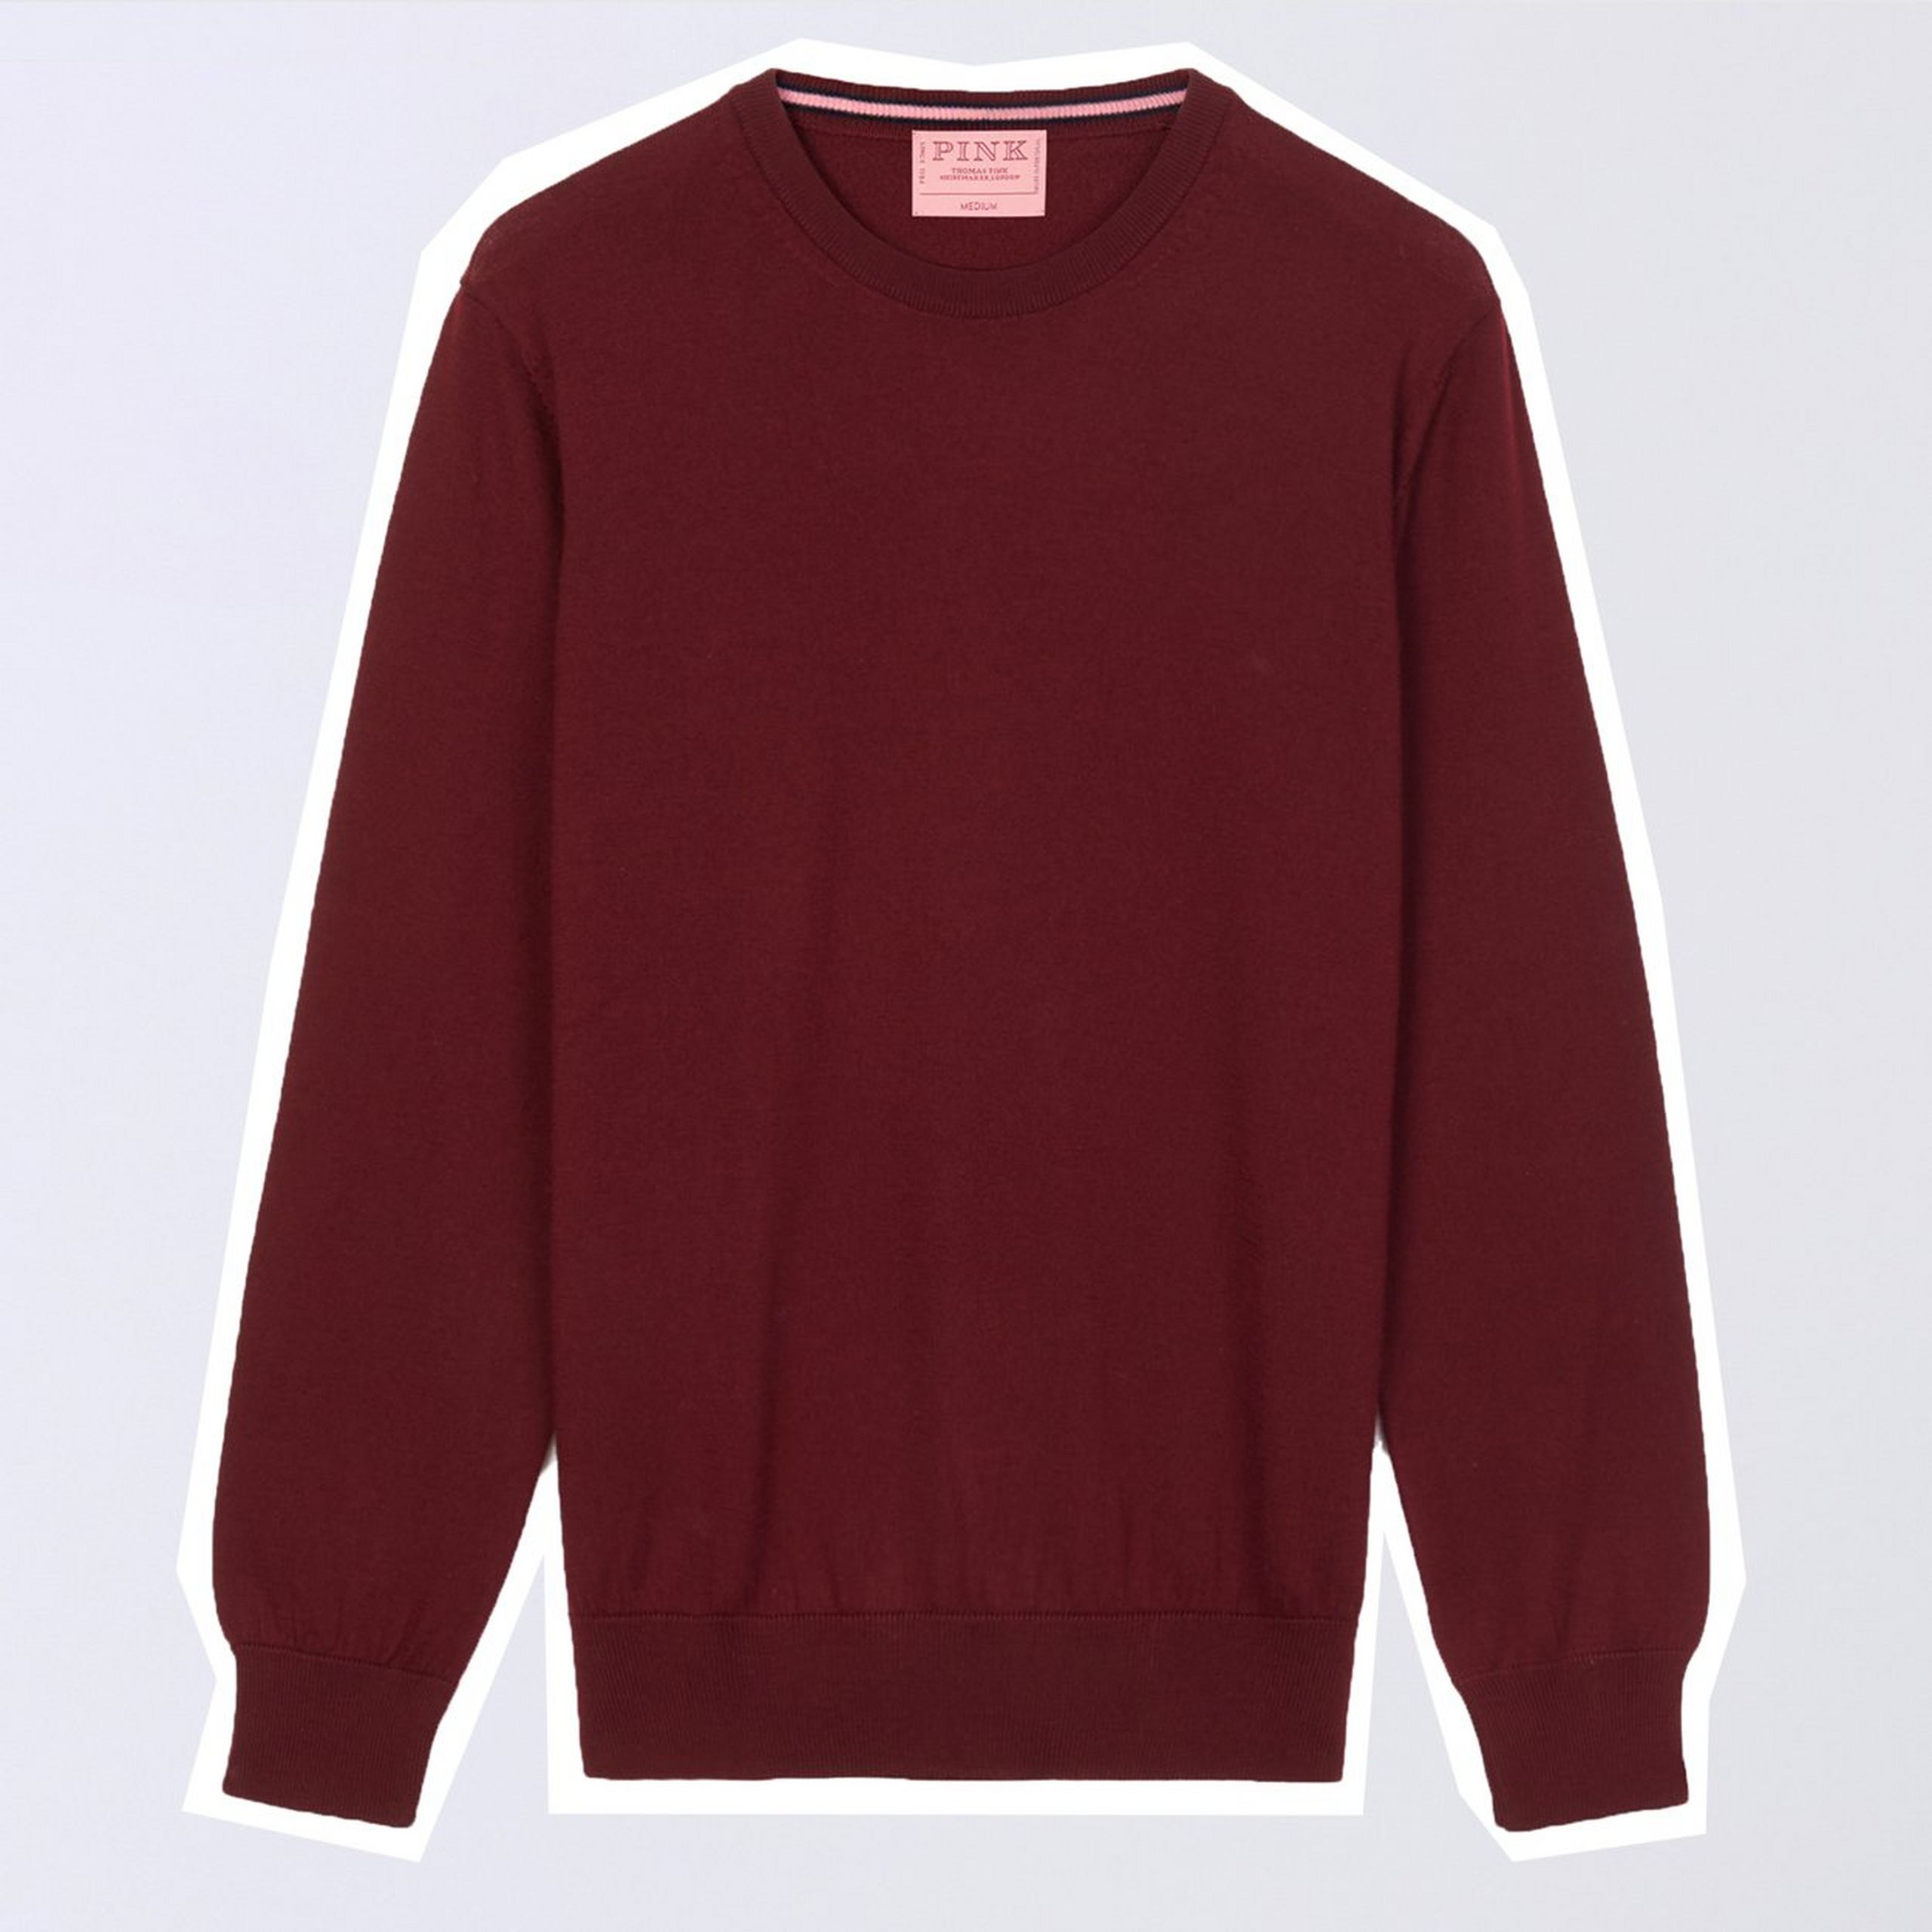 Burgundy Red Merino Wool Crew Neck Sweater, £150